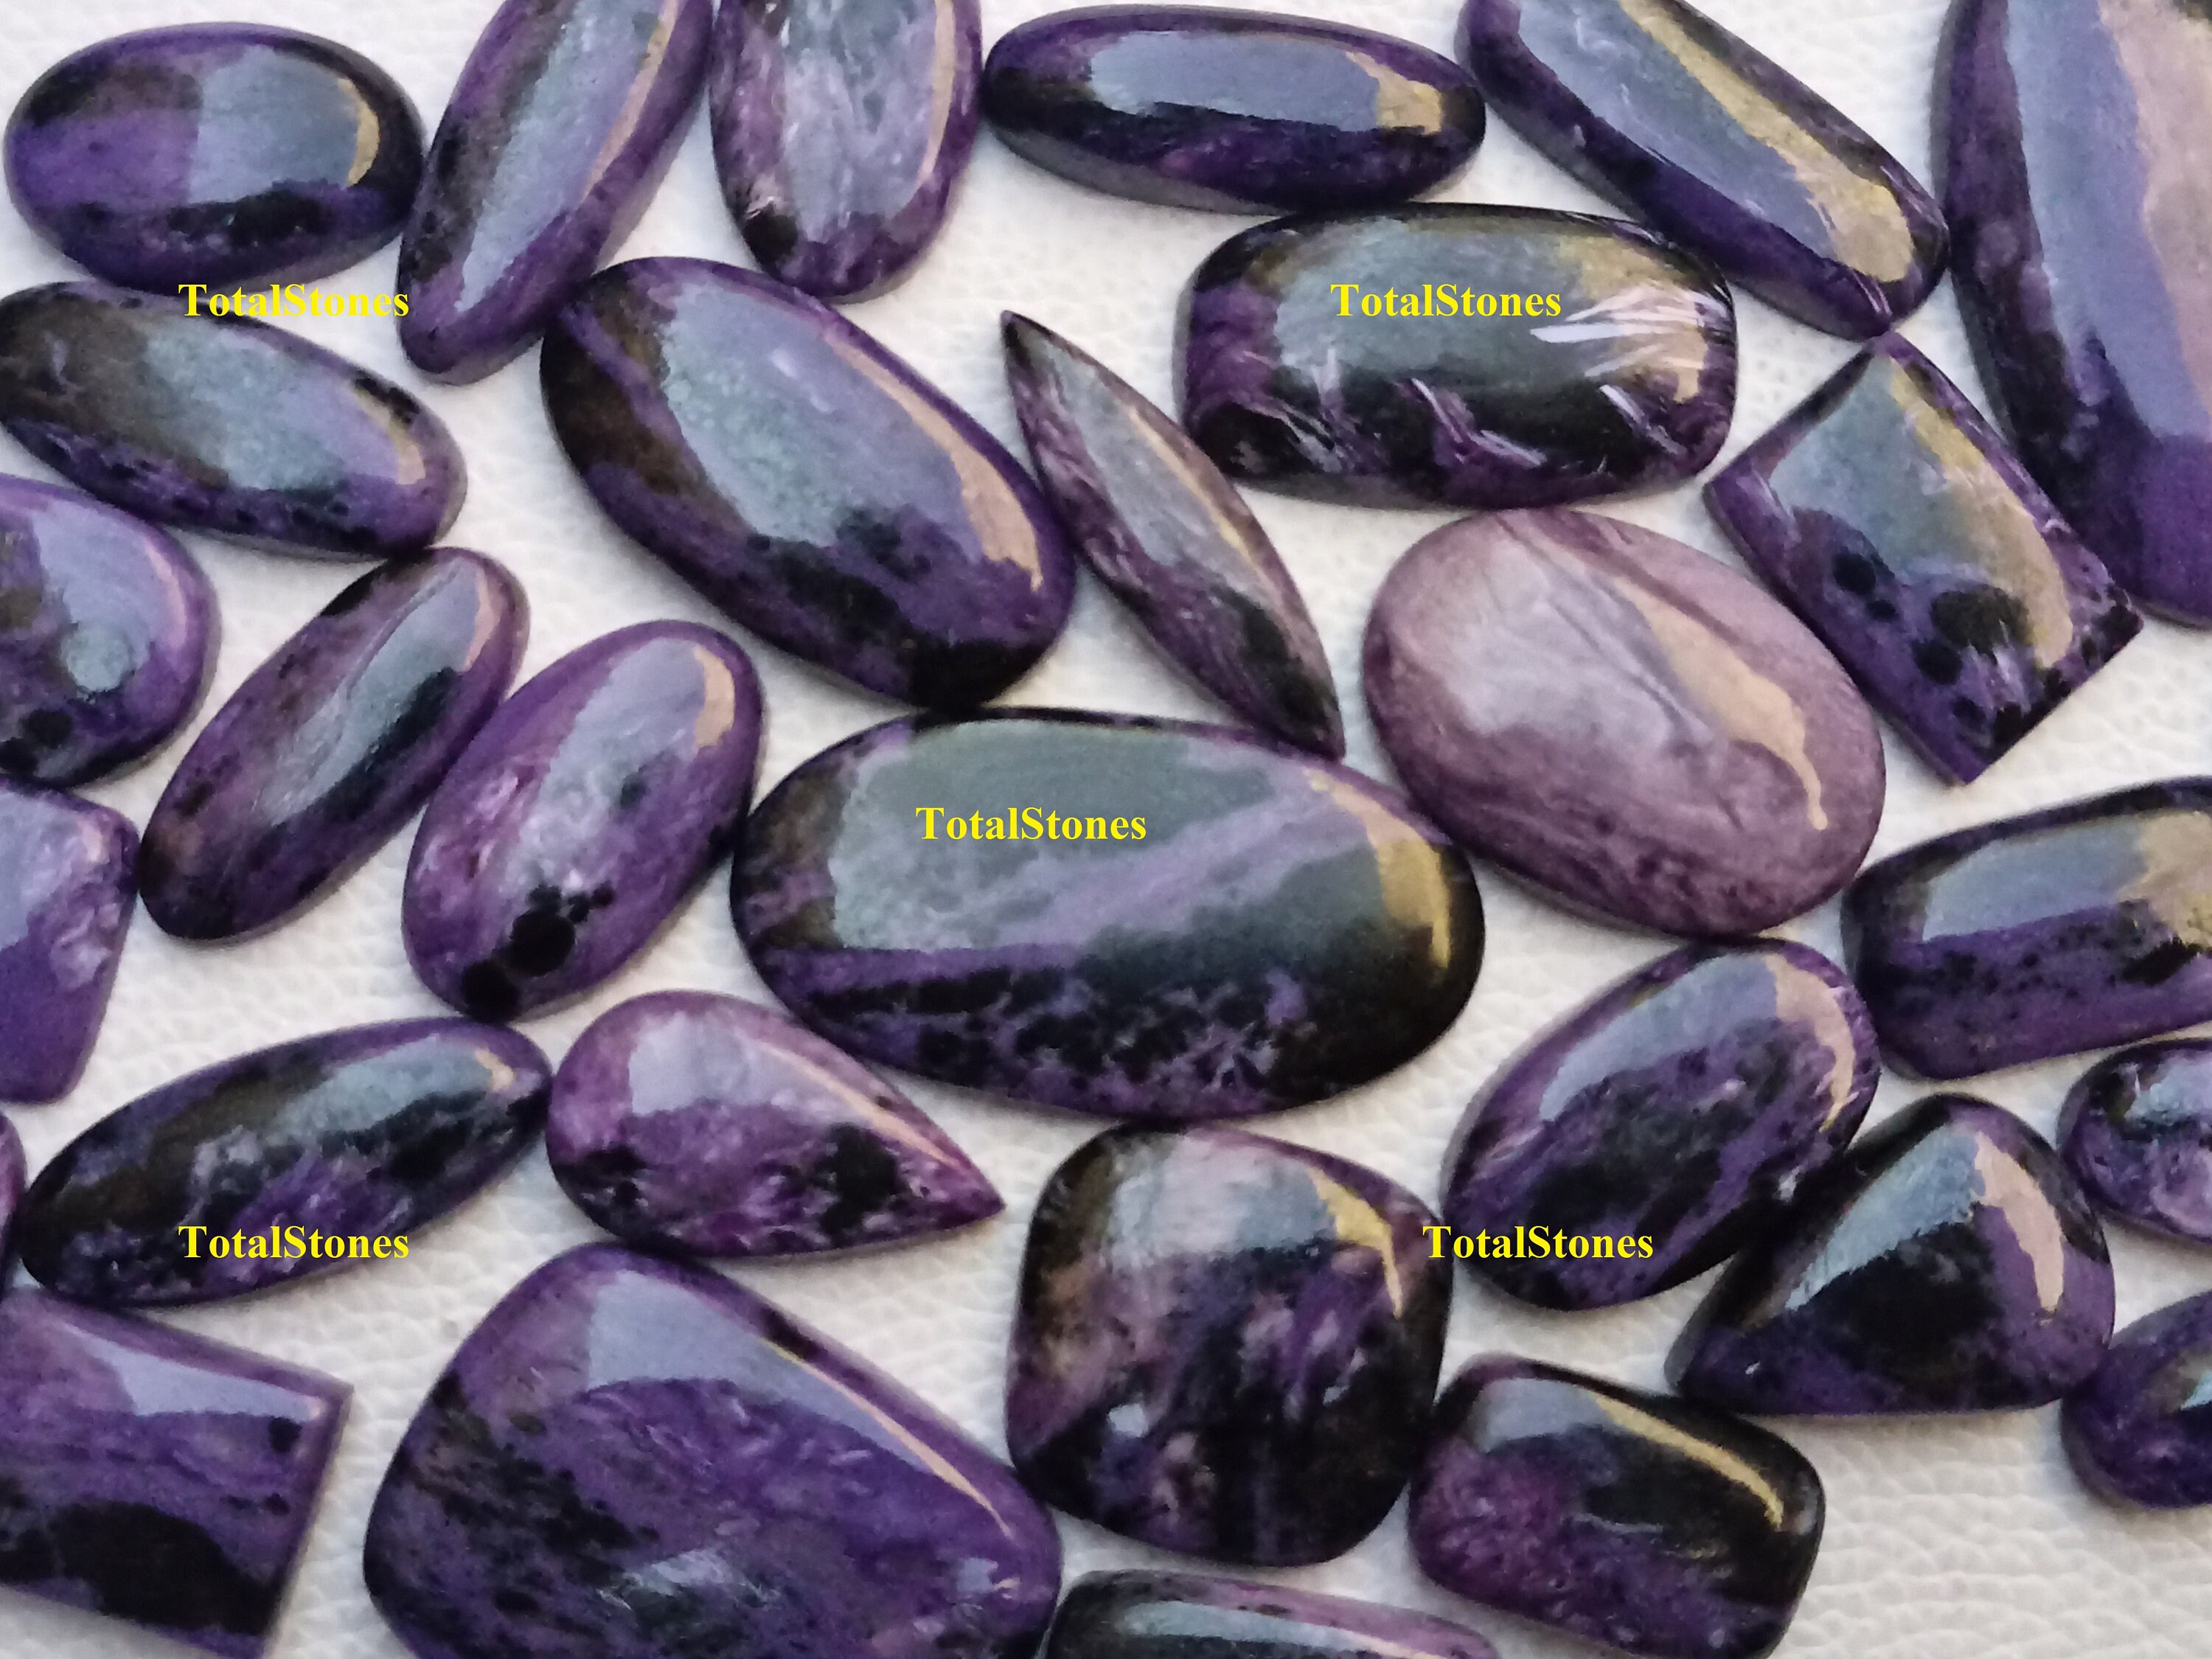 100% Natural BRILLIANT Purple Charoite Rough Cabochon Russian loose Gemstone 